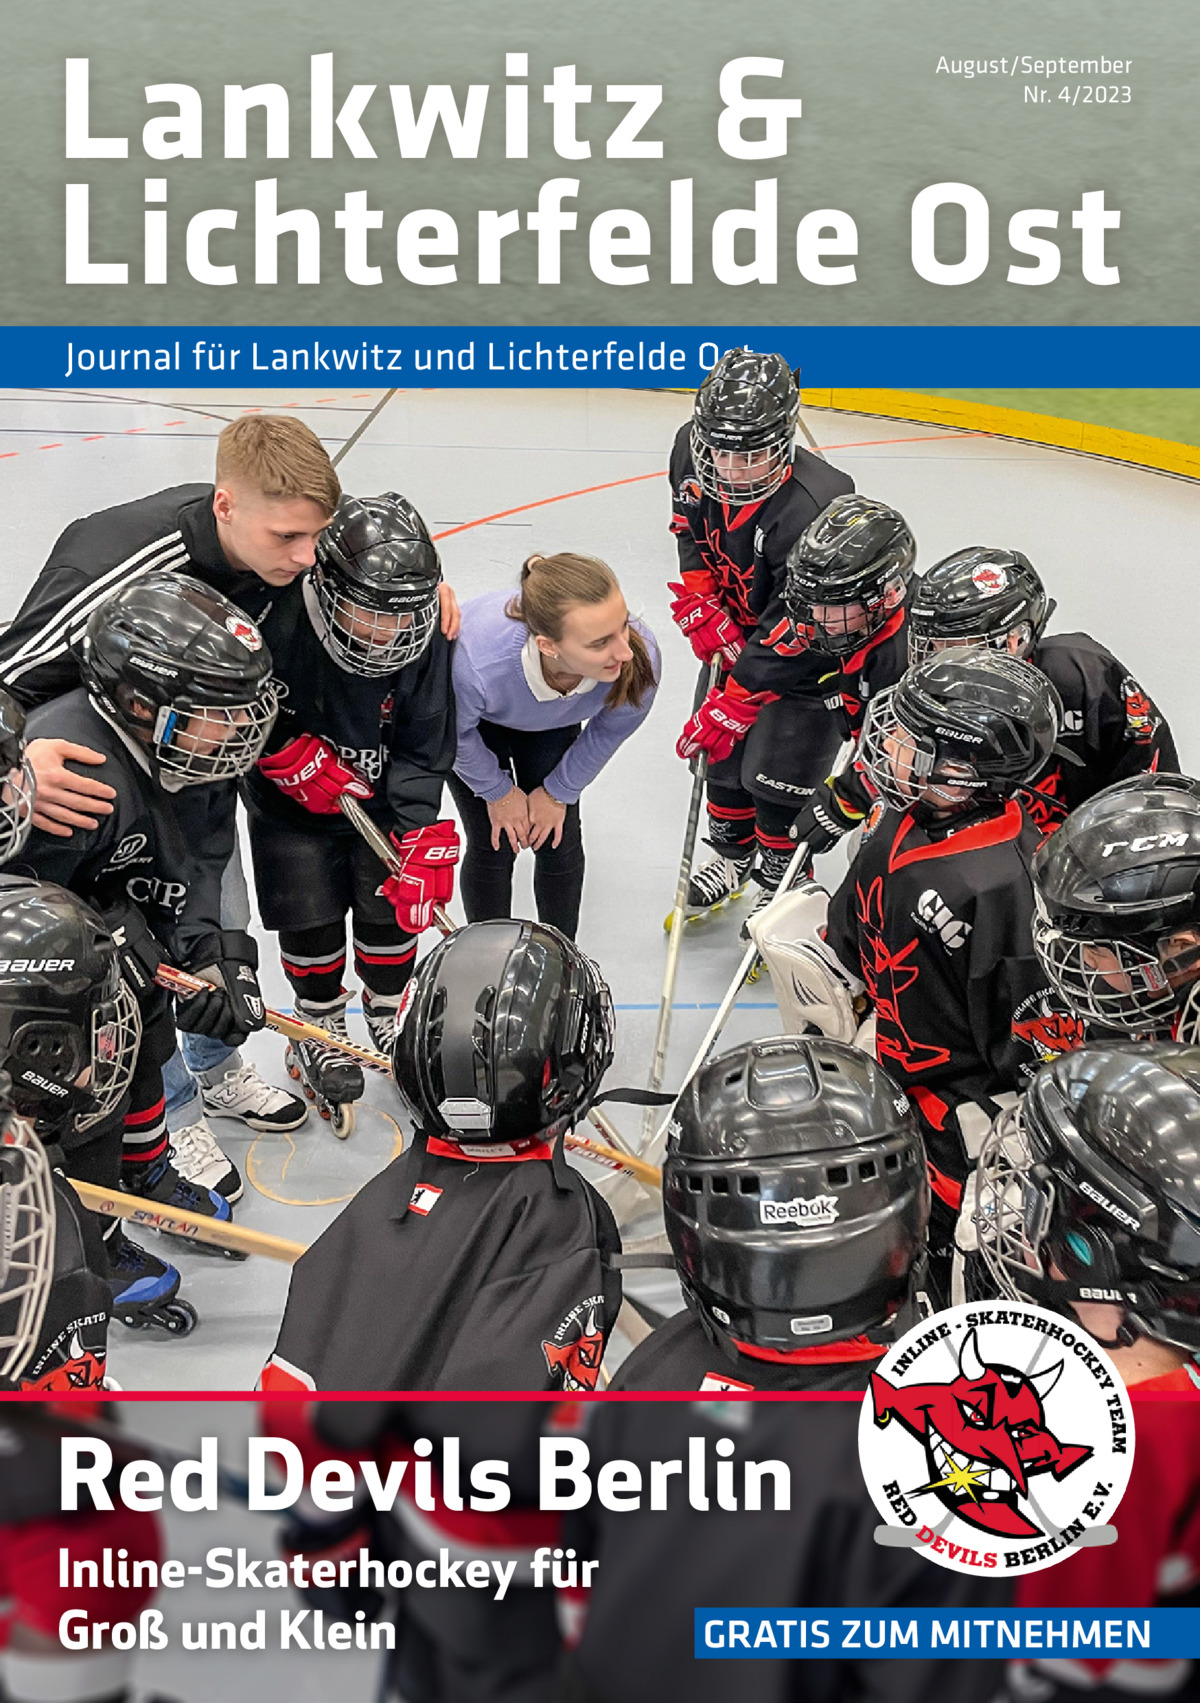 Lankwitz & Lichterfelde Ost  August/September Nr. 4/2023  Journal für Lankwitz und Lichterfelde Ost  Red Devils Berlin Inline-Skaterhockey für Groß und Klein  GRATIS ZUM MITNEHMEN